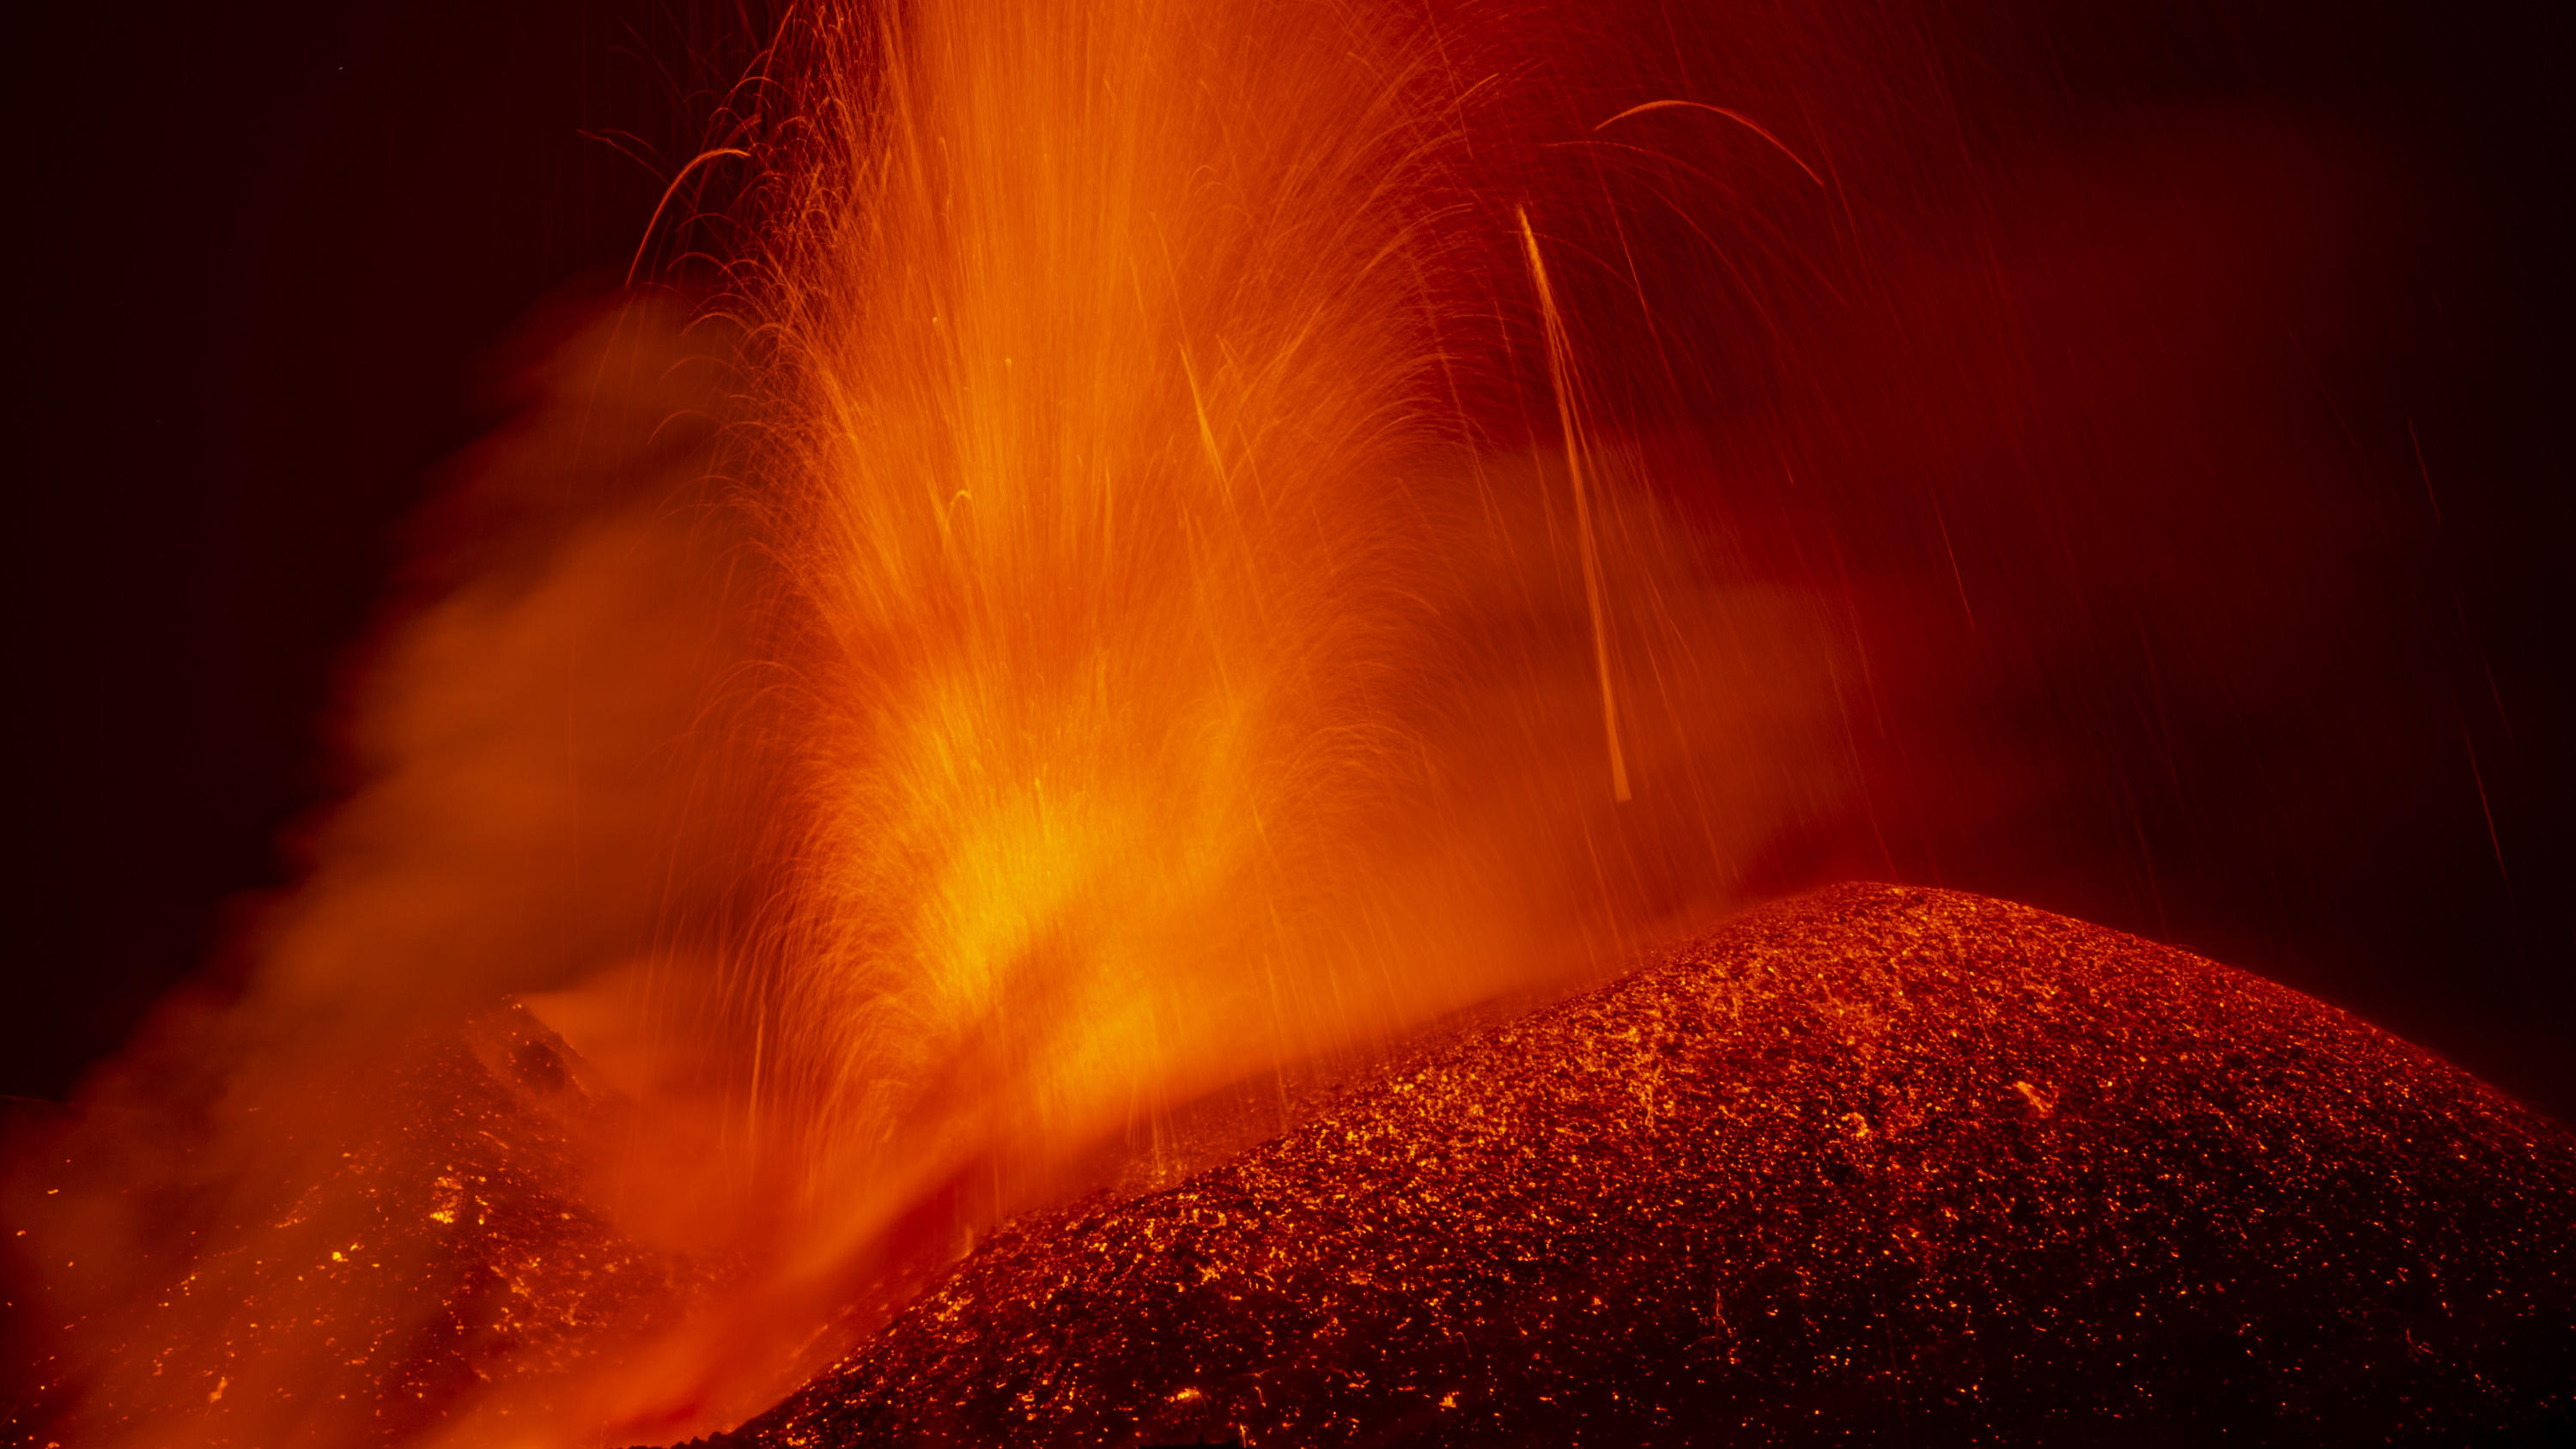 24.05.2021, Italien, Catania: Lava strömt aus dem südlichen Seitenkrater des Ätna, der höchste aktive Vulkan in Europa. Foto: Salvatore Allegra/AP/dpa +++ dpa-Bildfunk +++